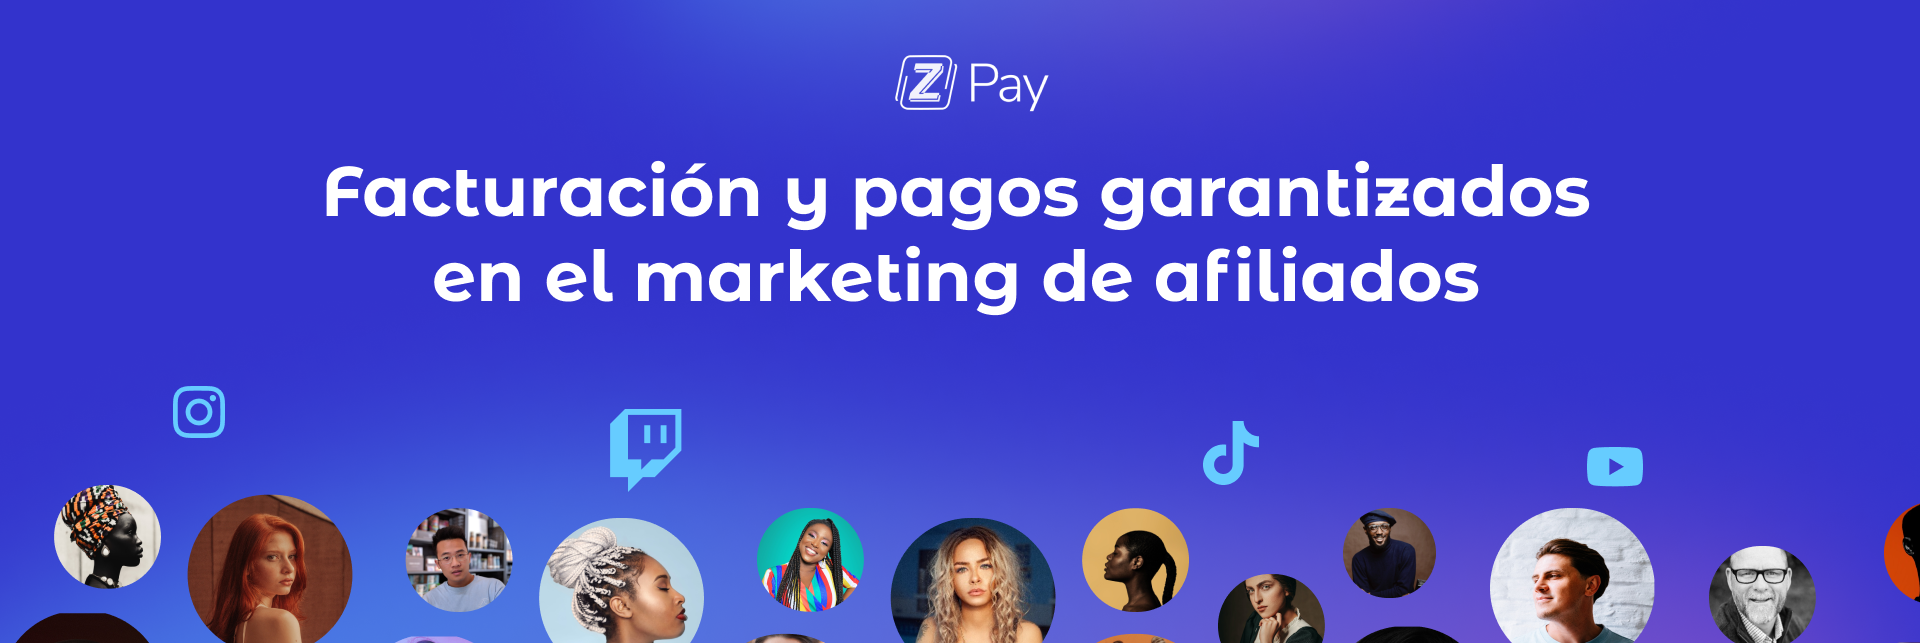 Banner con el título del blog "Facturación y pagos garantizados en el marketing de afiliados" en color persian blue con íconos de redes sociales e imágenes de influencers en círculos.